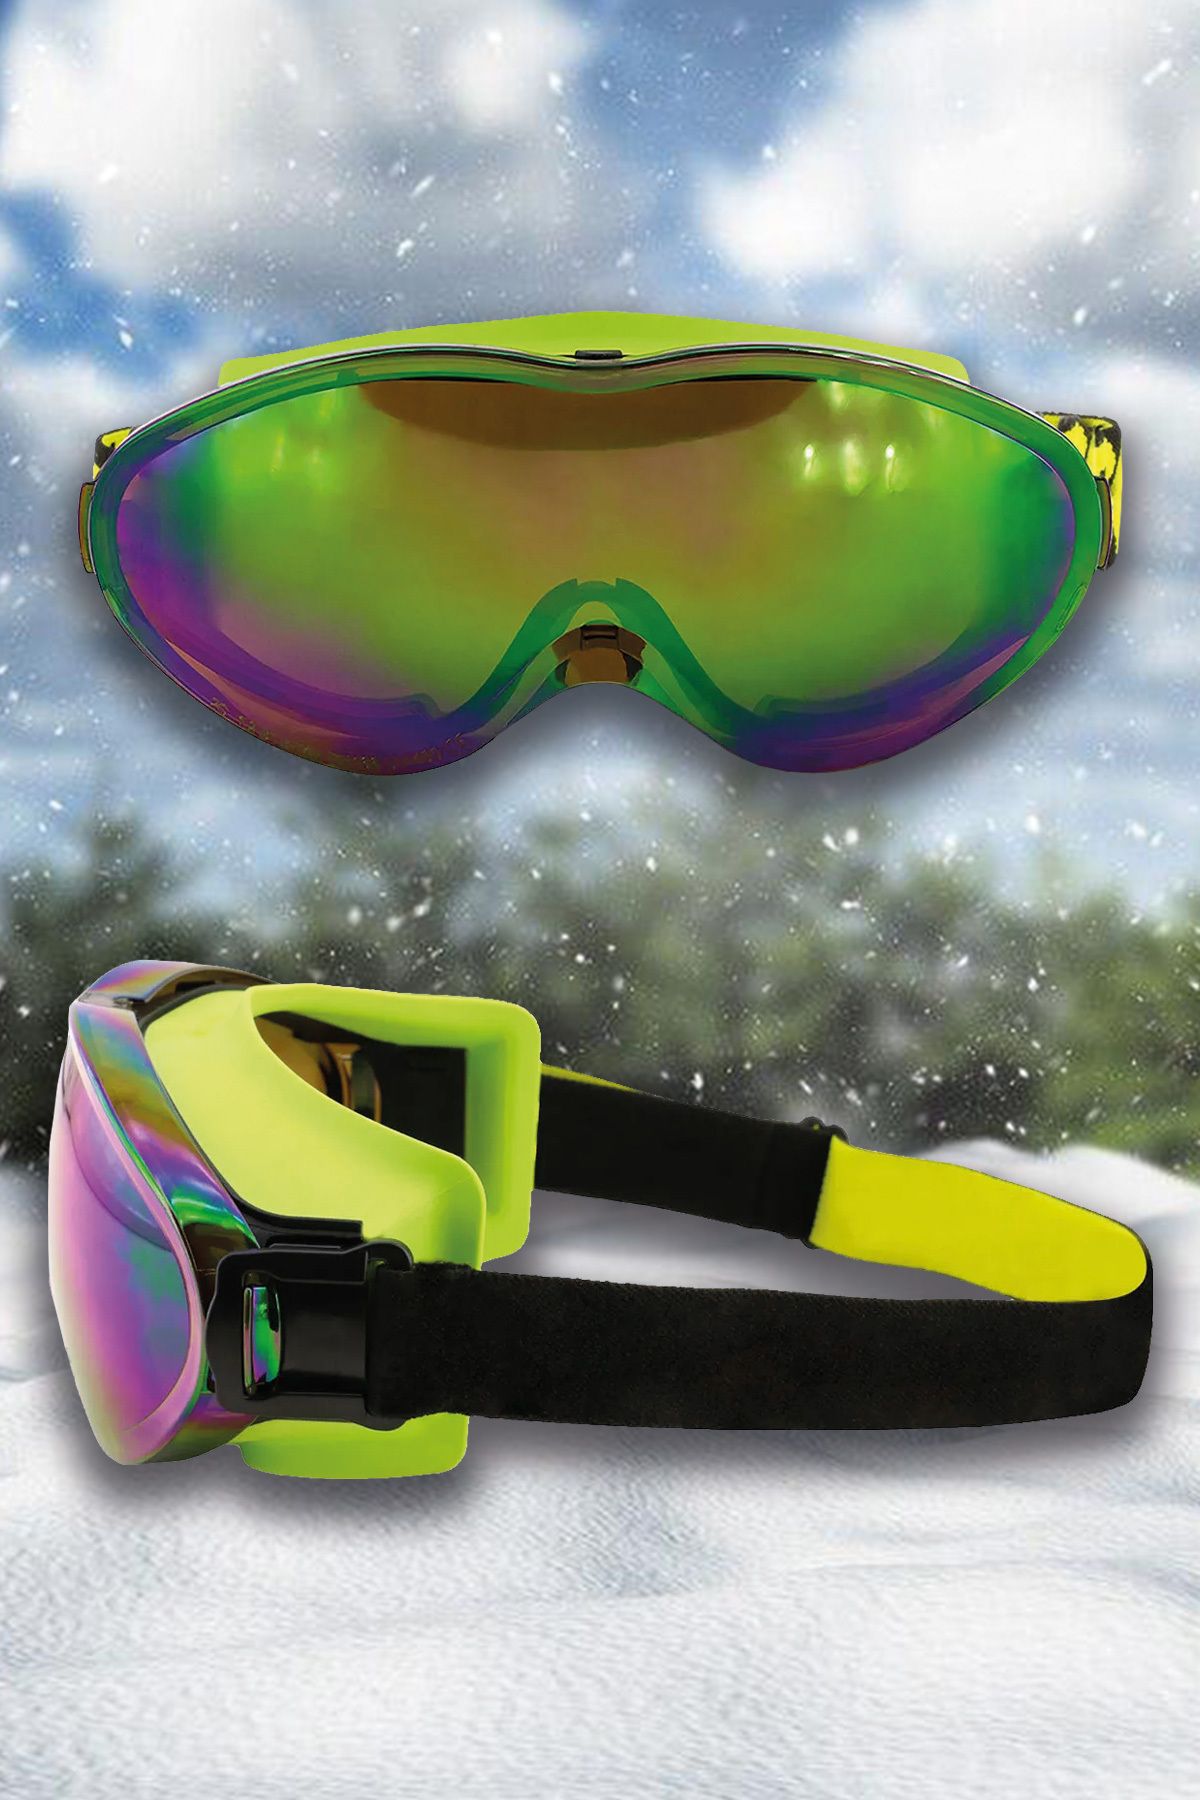 MH MiniHediye Kayak Gözlüğü Aynalı Gökkuşağı Ventilli Güneş Kar Koruyucu Gözlük UV Korumalı Snowboard Glasses